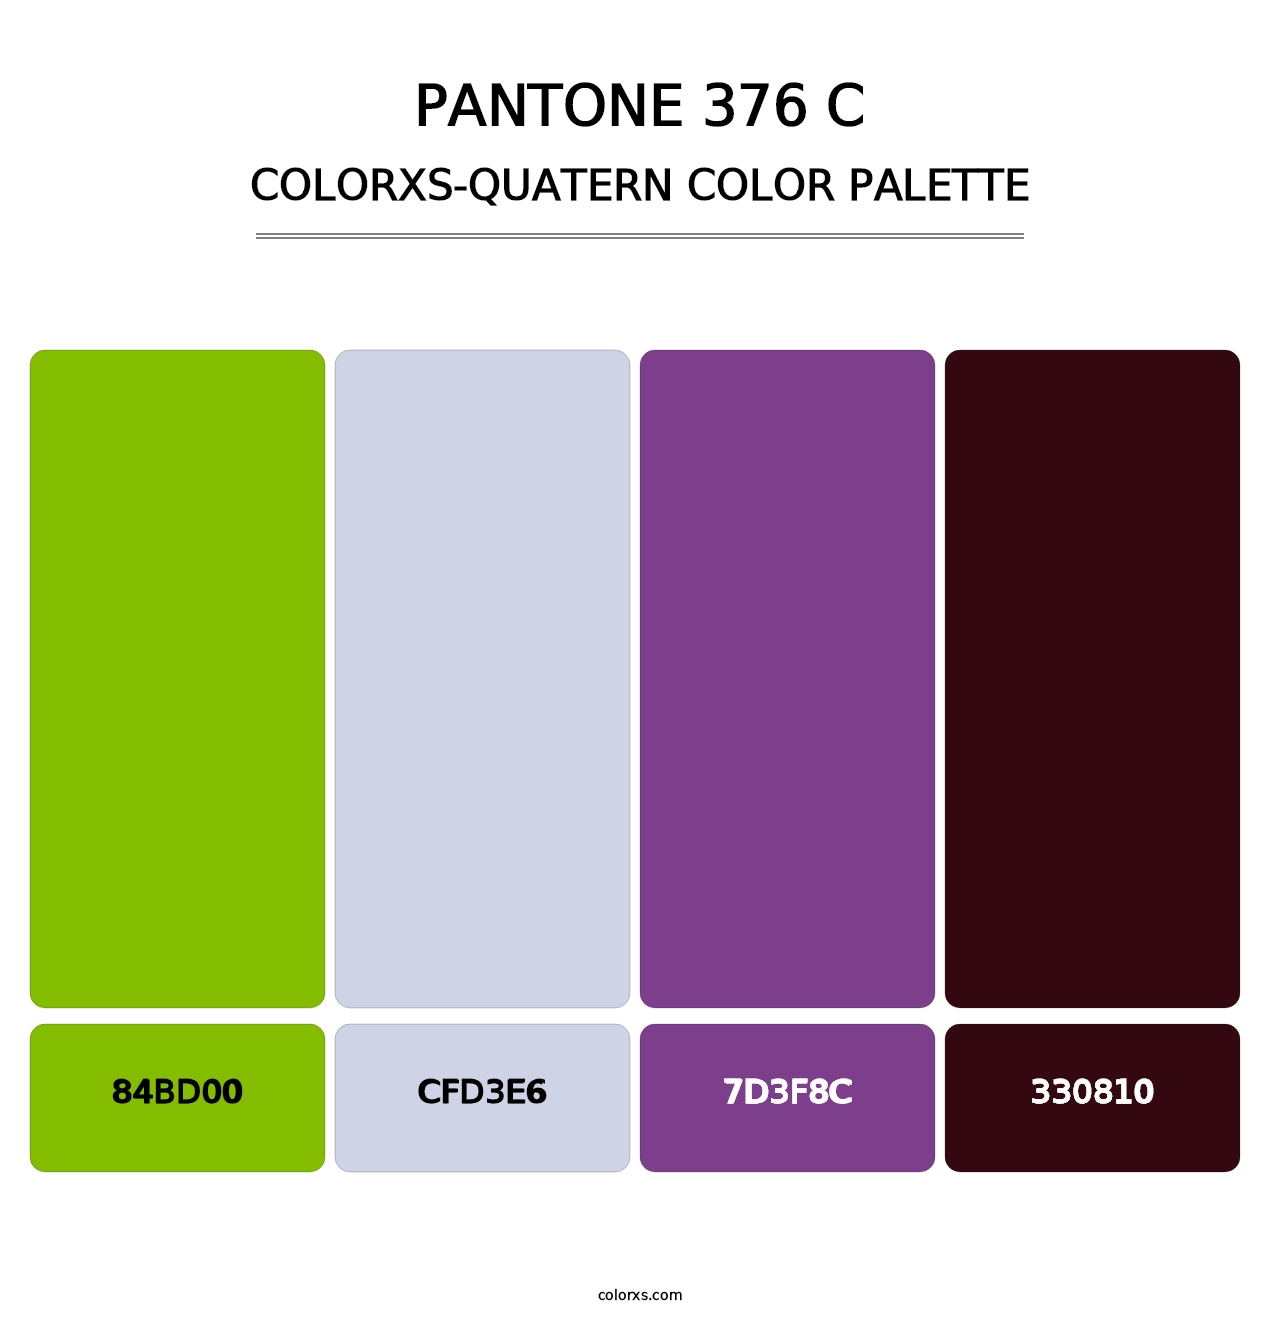 PANTONE 376 C - Colorxs Quatern Palette